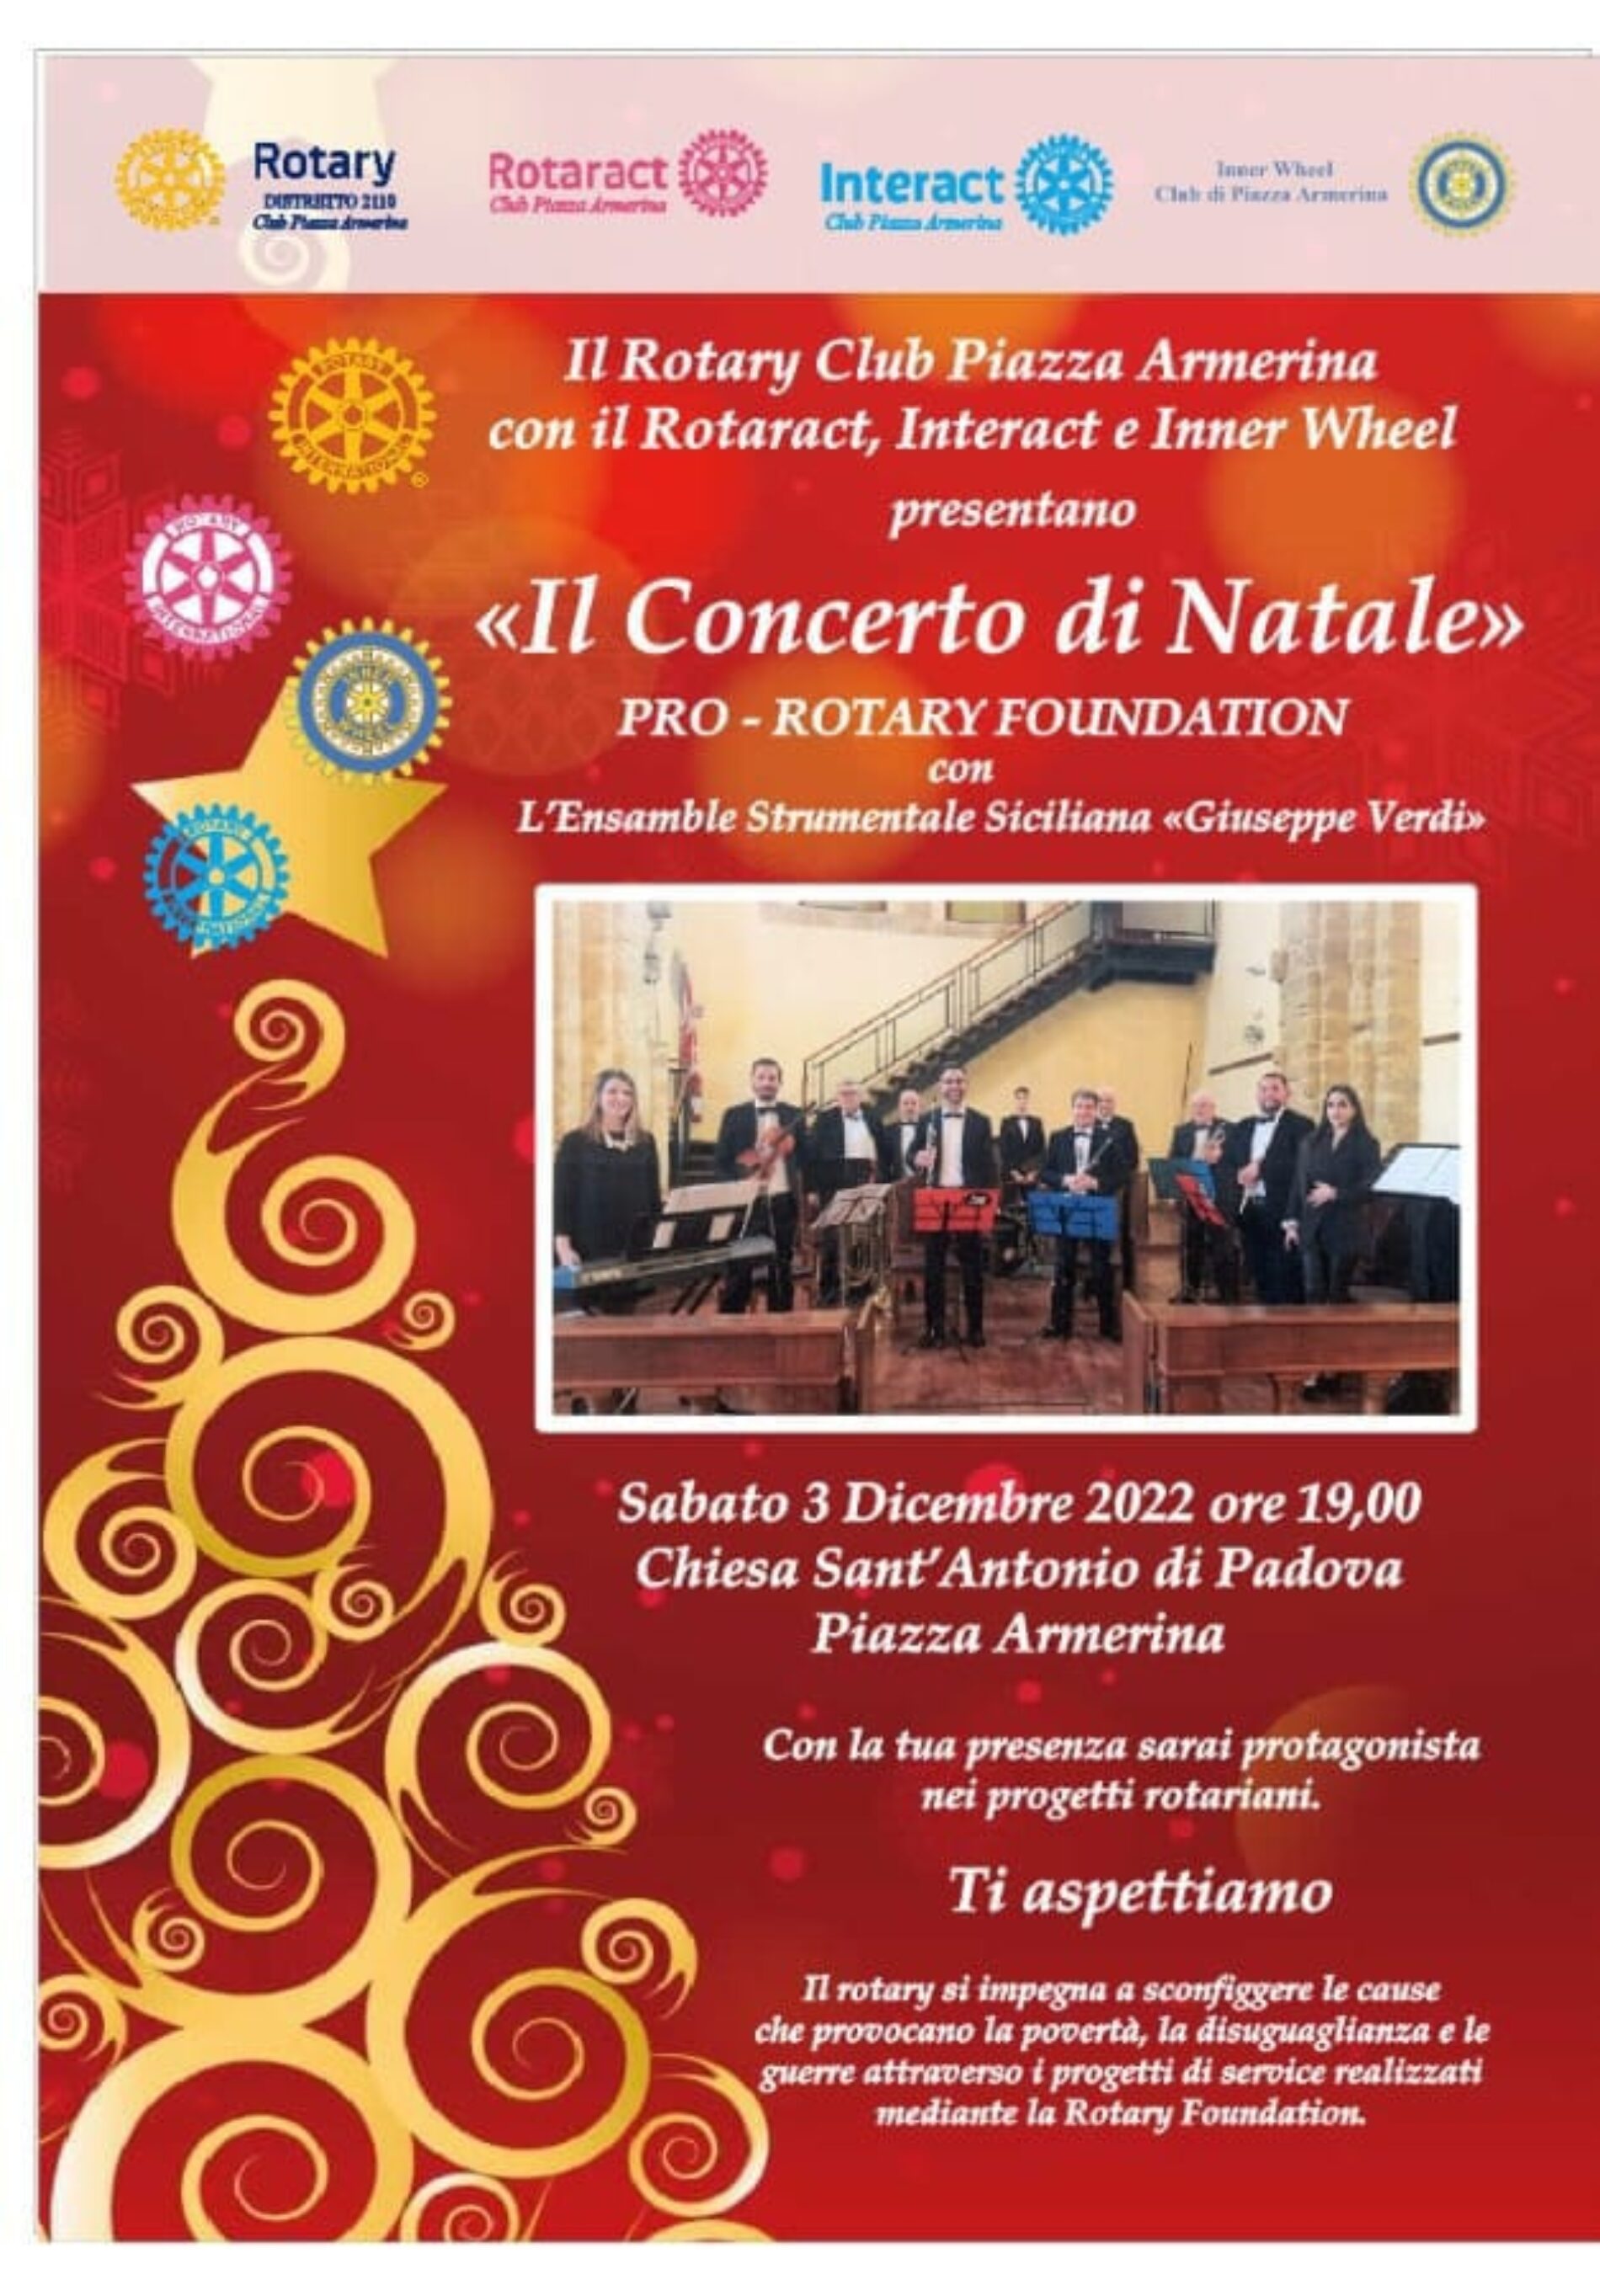 PIAZZA ARMERINA. Il “Concerto di Natale” pro Rotary Foundation con l’Ensemble Strumentale Siciliana “Giuseppe Verdi”.